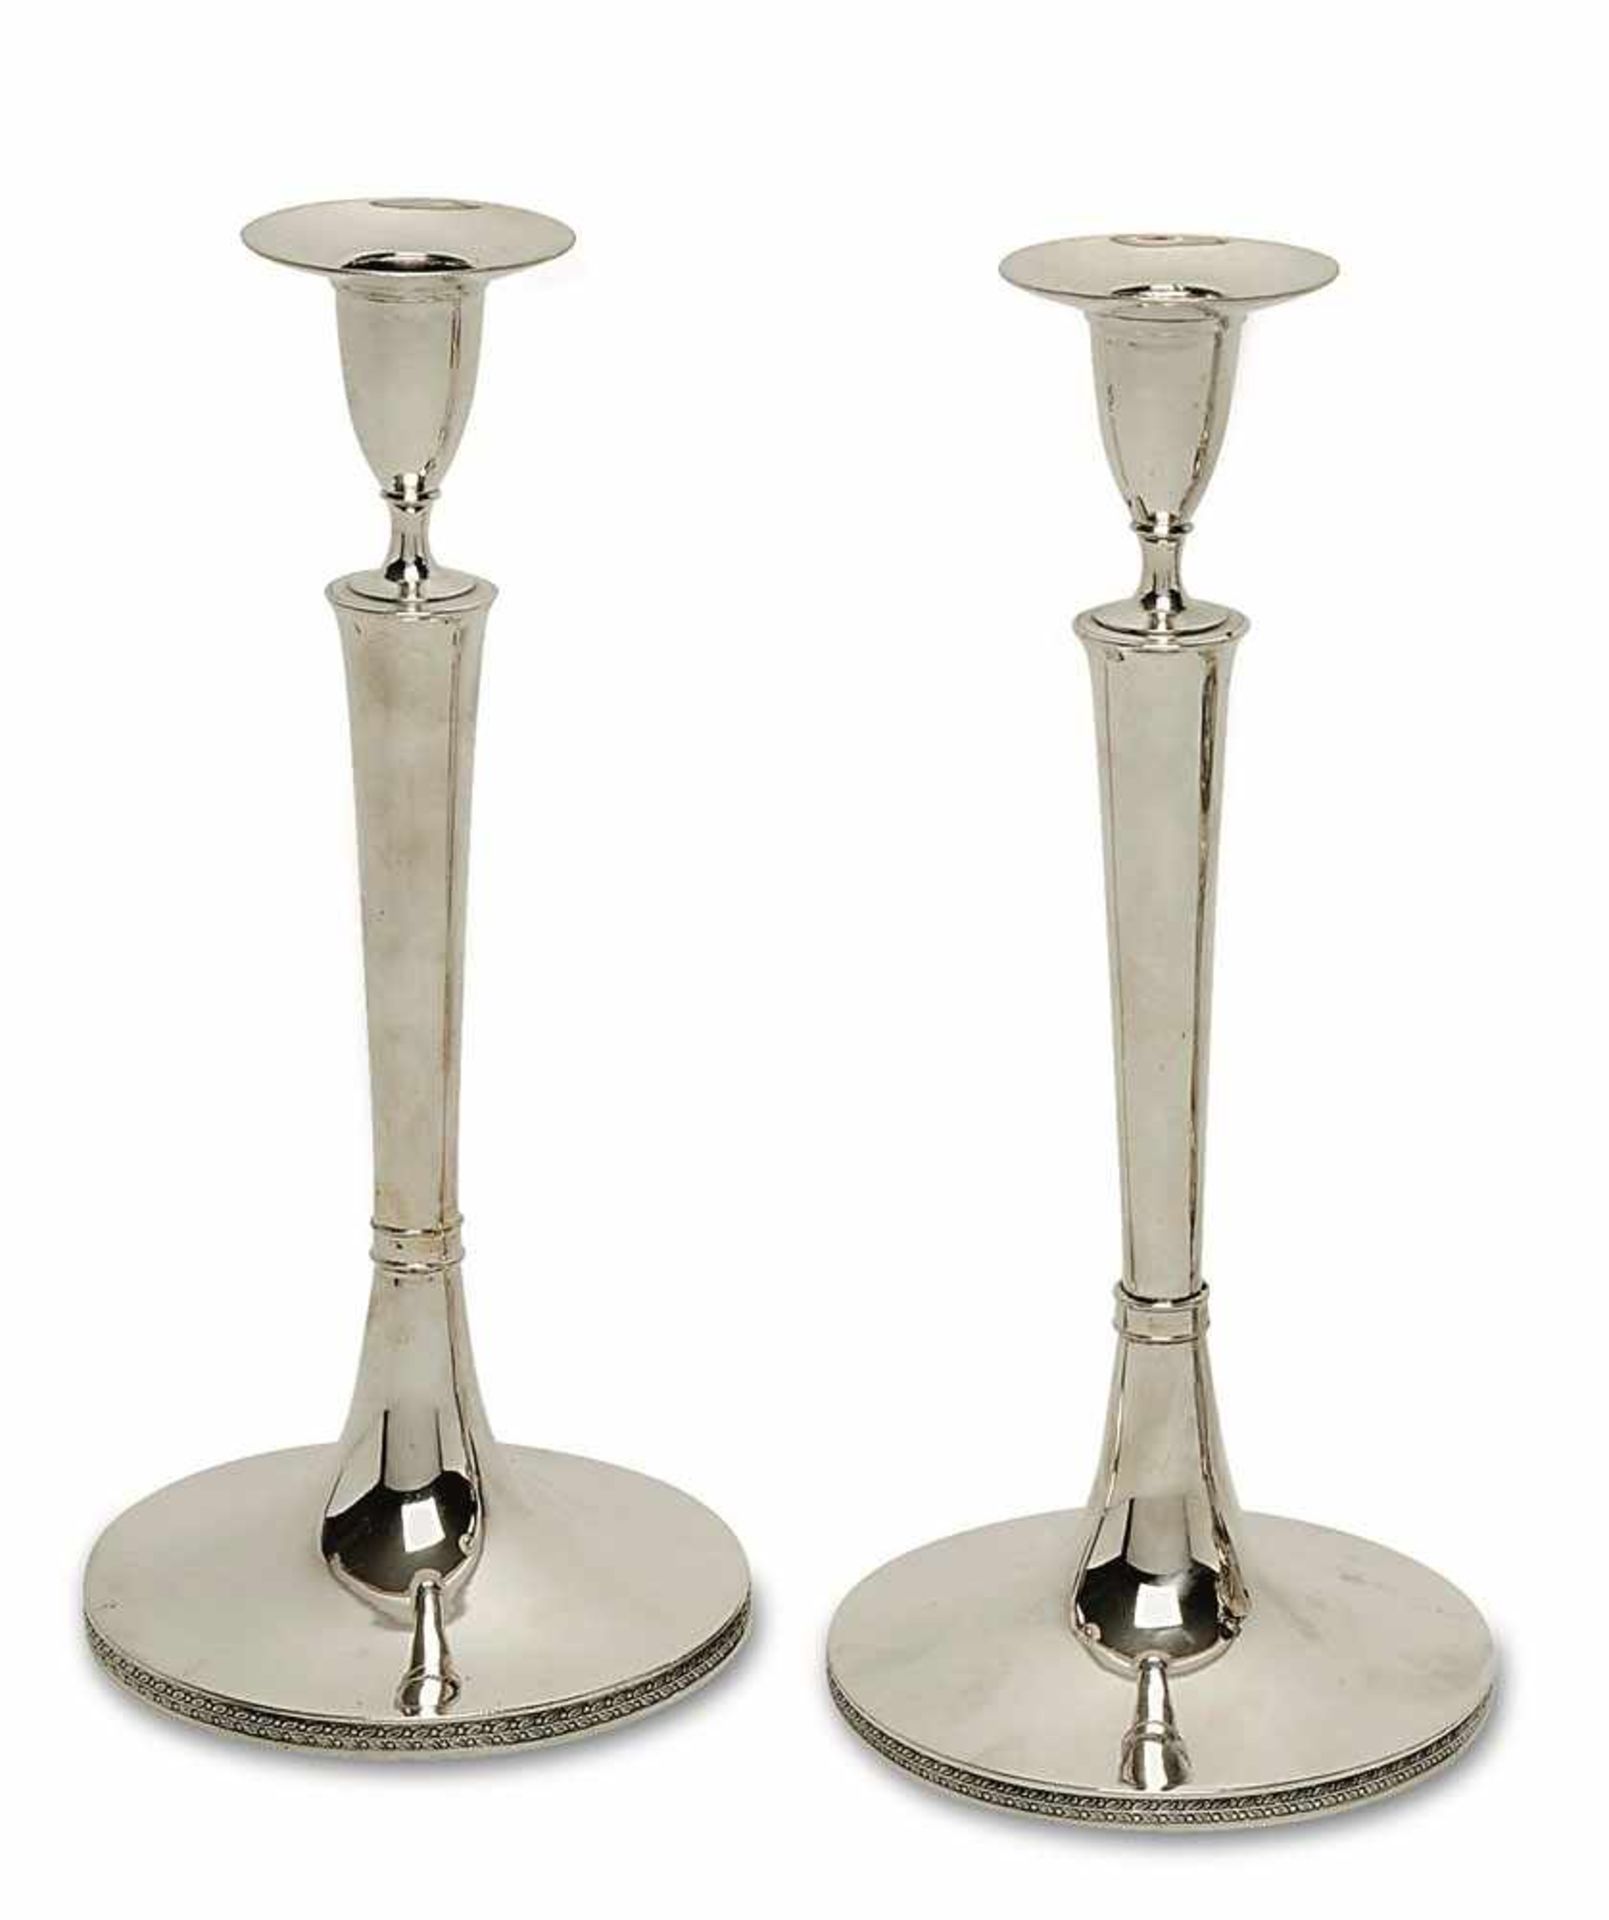 Ein Paar Kerzenleuchter Pressburg, um 1823 Silber. Glatte Vasentüllen auf leicht konischem Schaft.